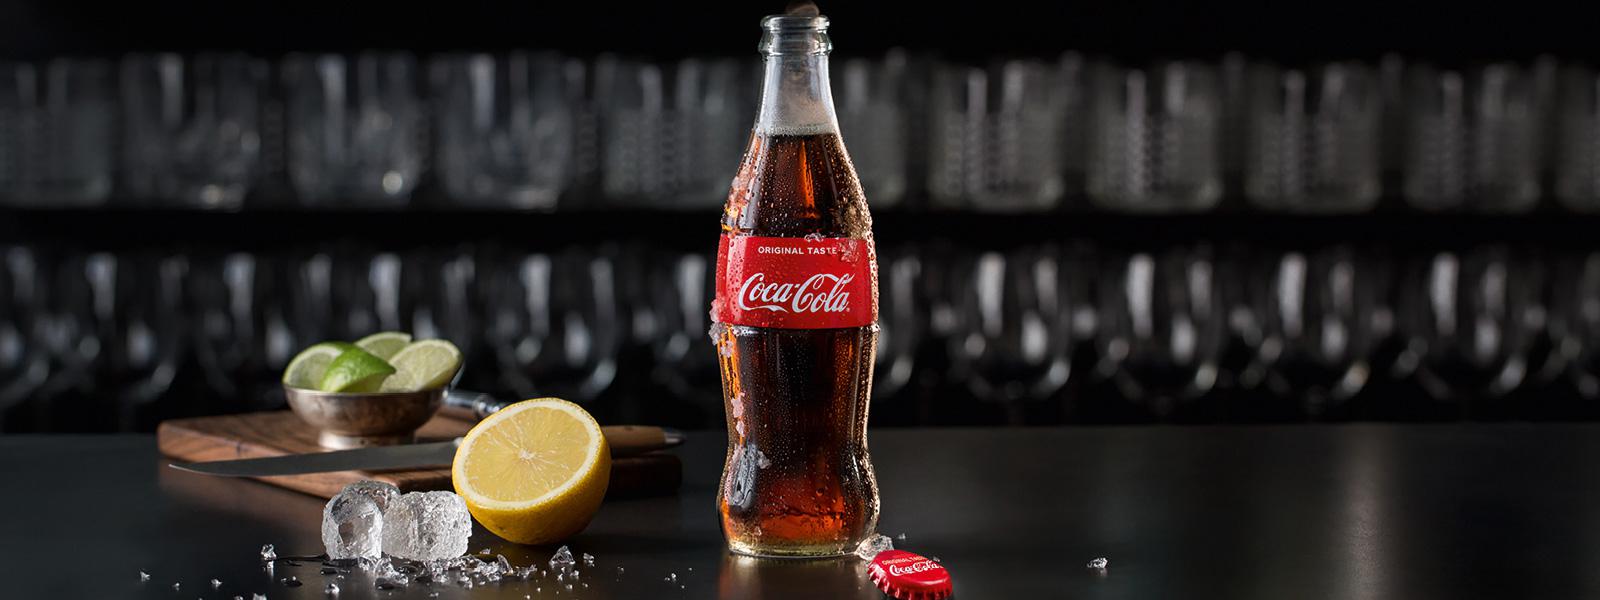 En glasflaske med Coca-Cola Original smag står på bordet sammen med en citron